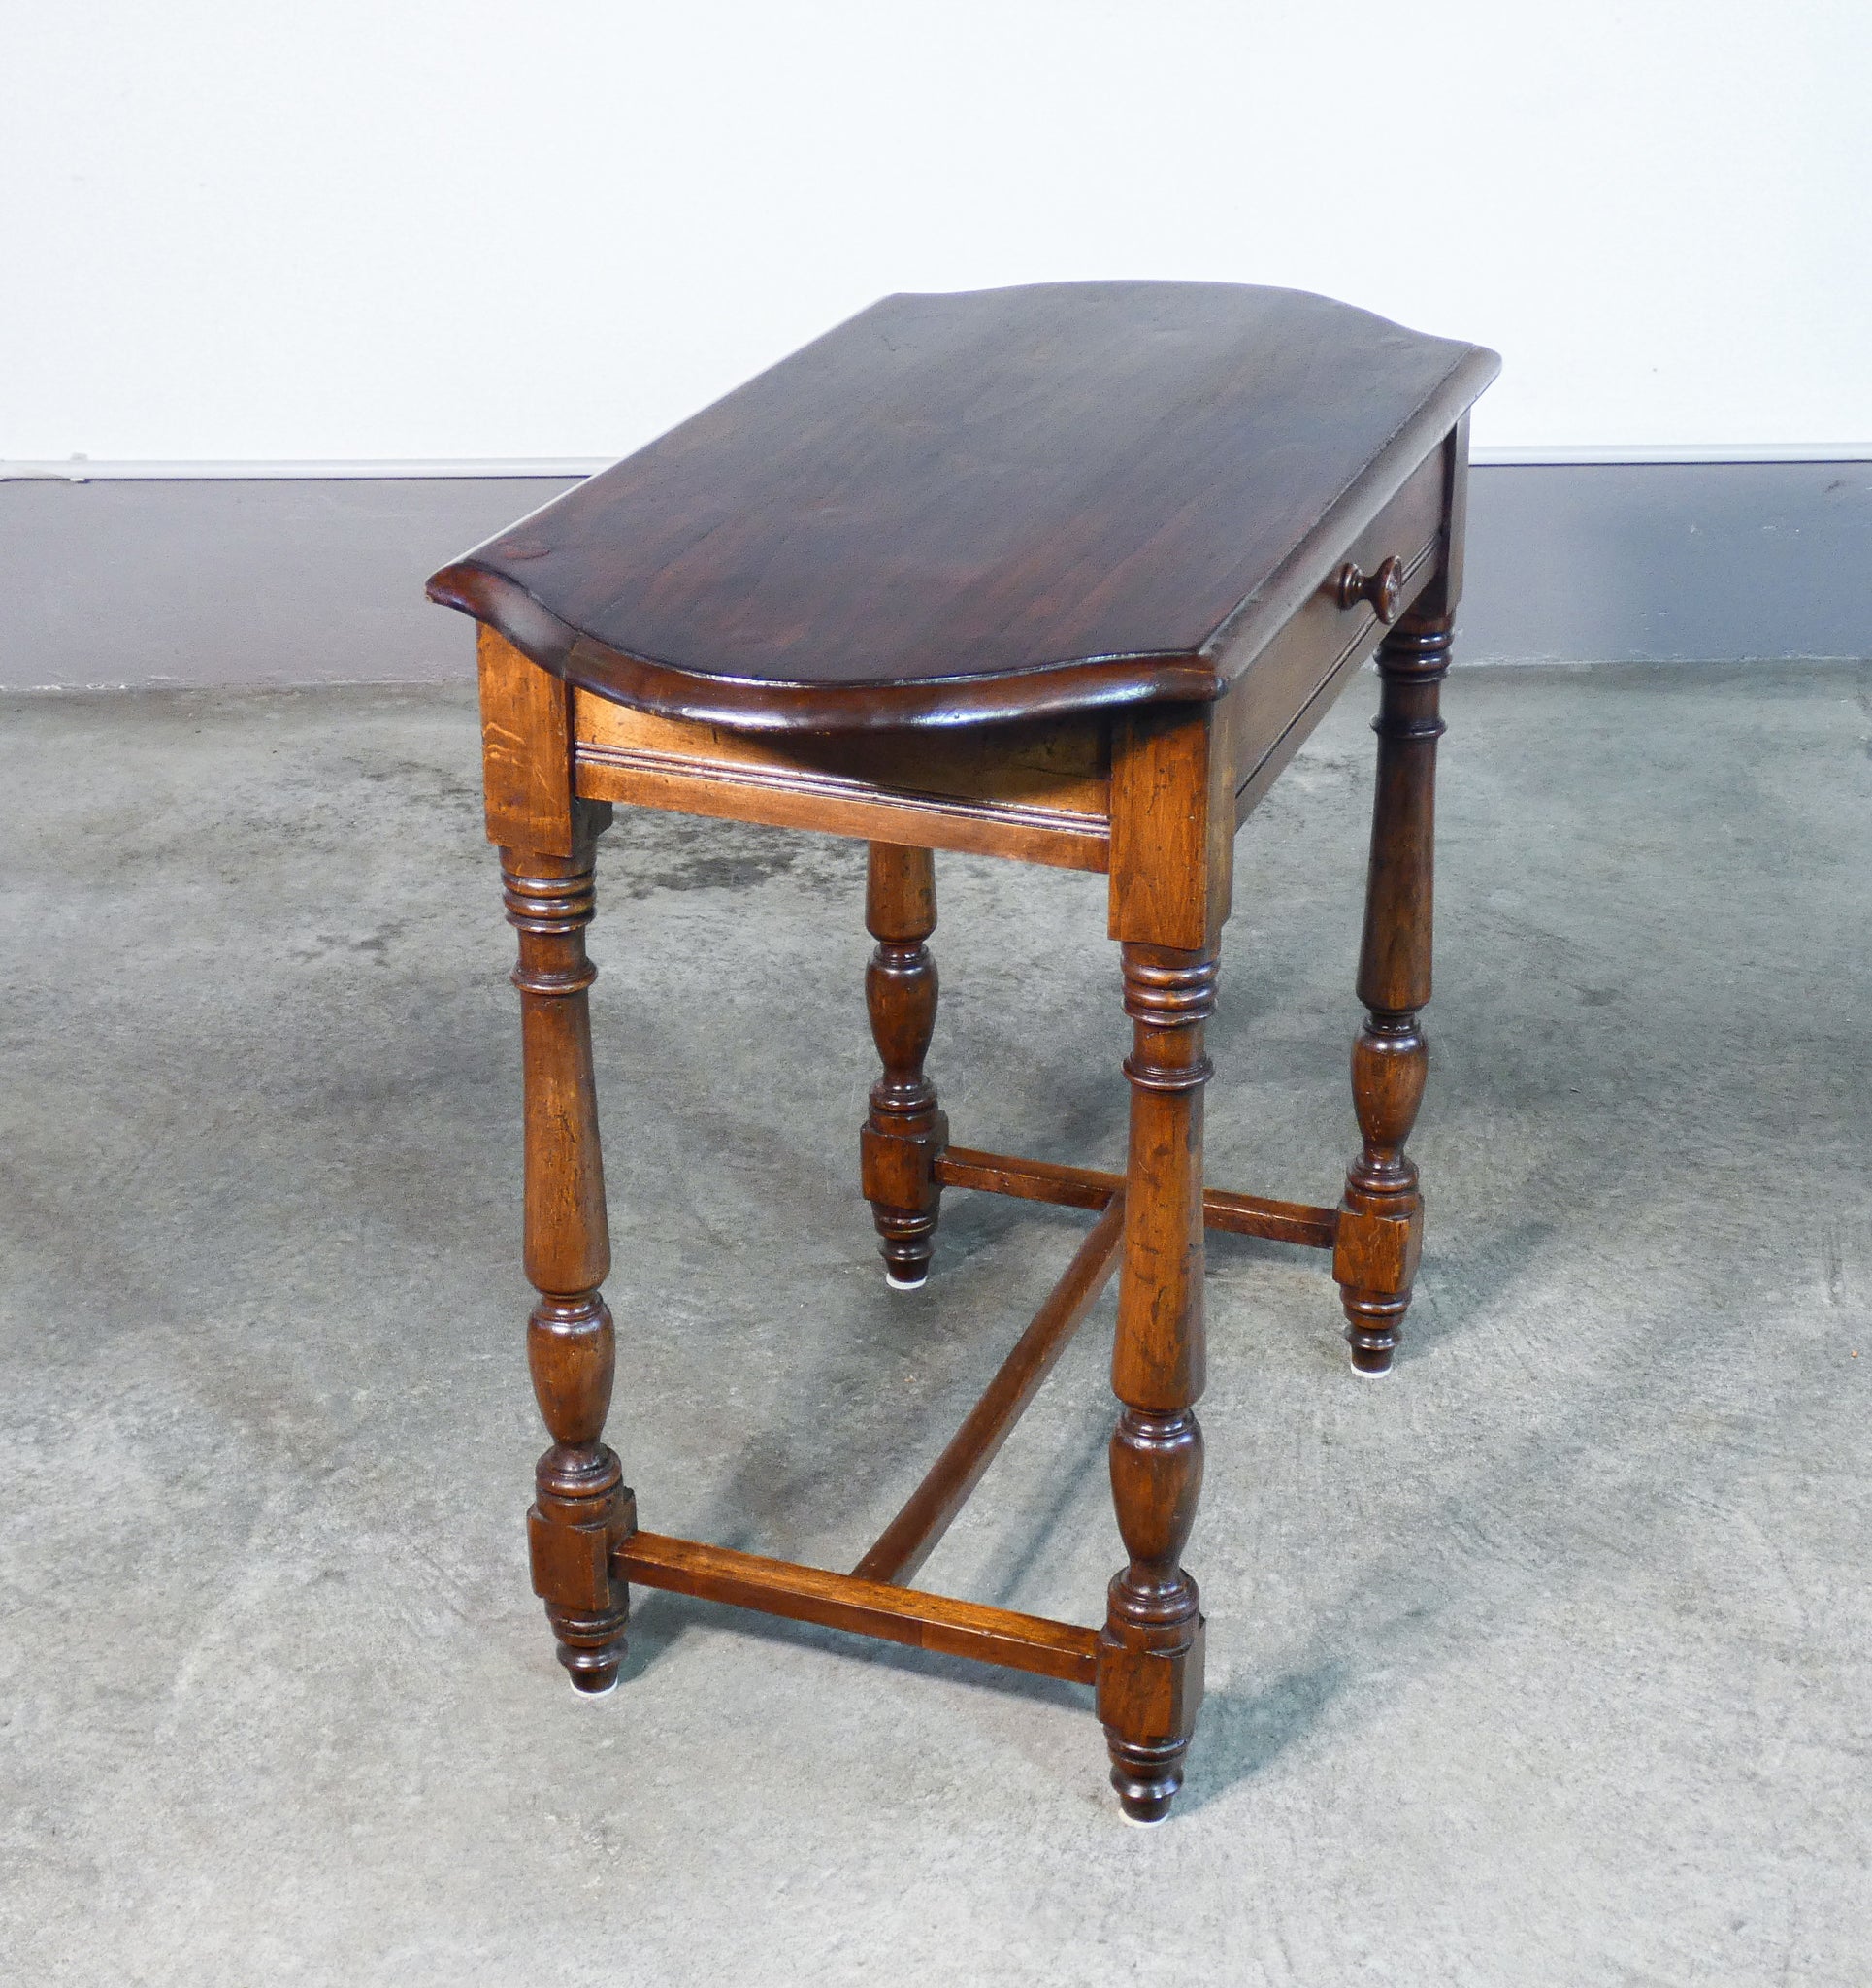 tavolino carlo x legno massello pioppo epoca 1800 salotto tavolo antico